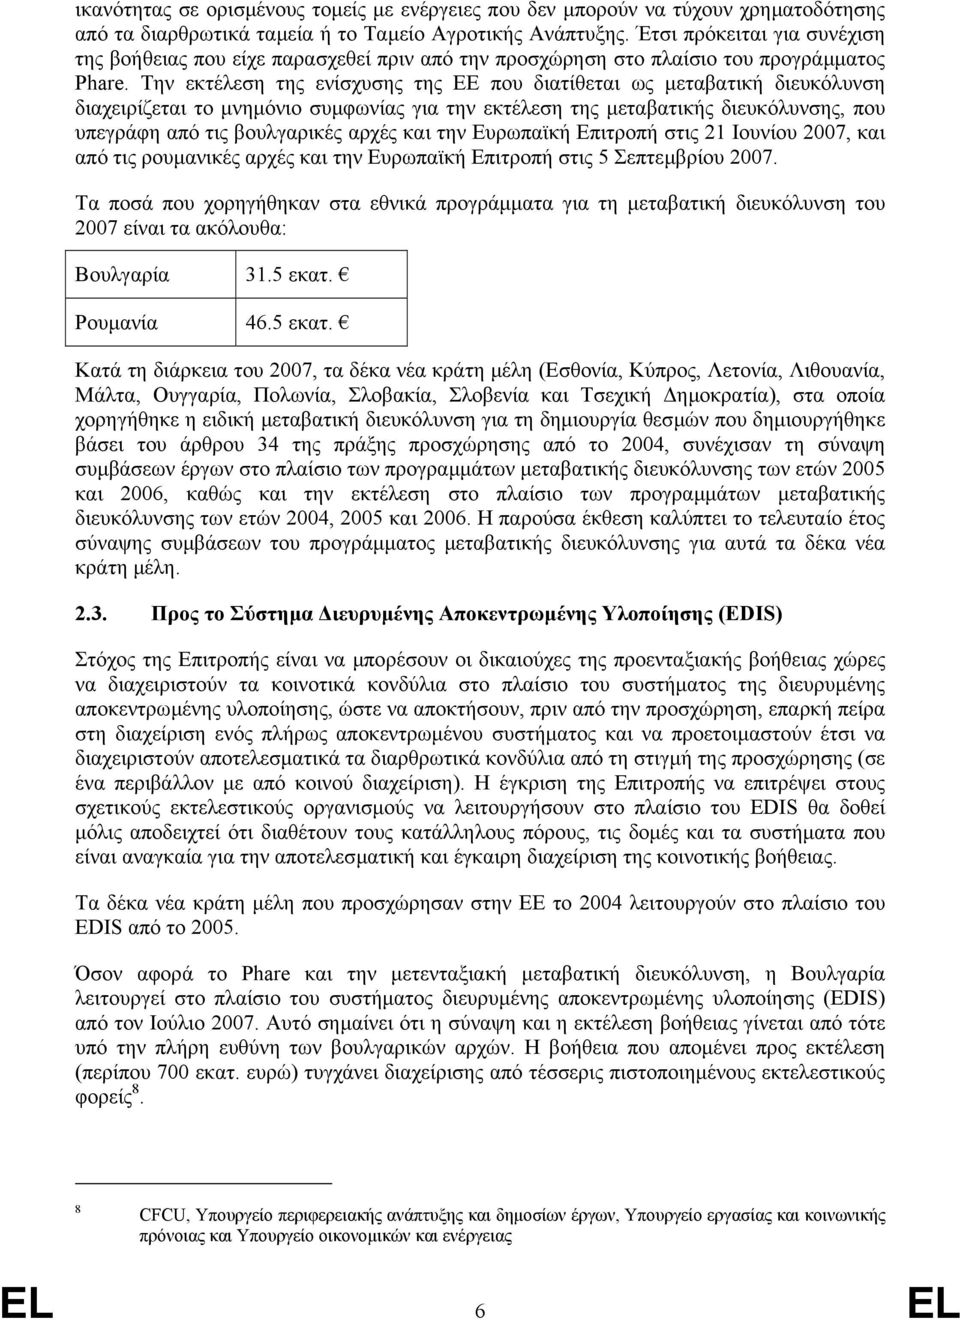 Την εκτέλεση της ενίσχυσης της ΕΕ που διατίθεται ως µεταβατική διευκόλυνση διαχειρίζεται το µνηµόνιο συµφωνίας για την εκτέλεση της µεταβατικής διευκόλυνσης, που υπεγράφη από τις βουλγαρικές αρχές